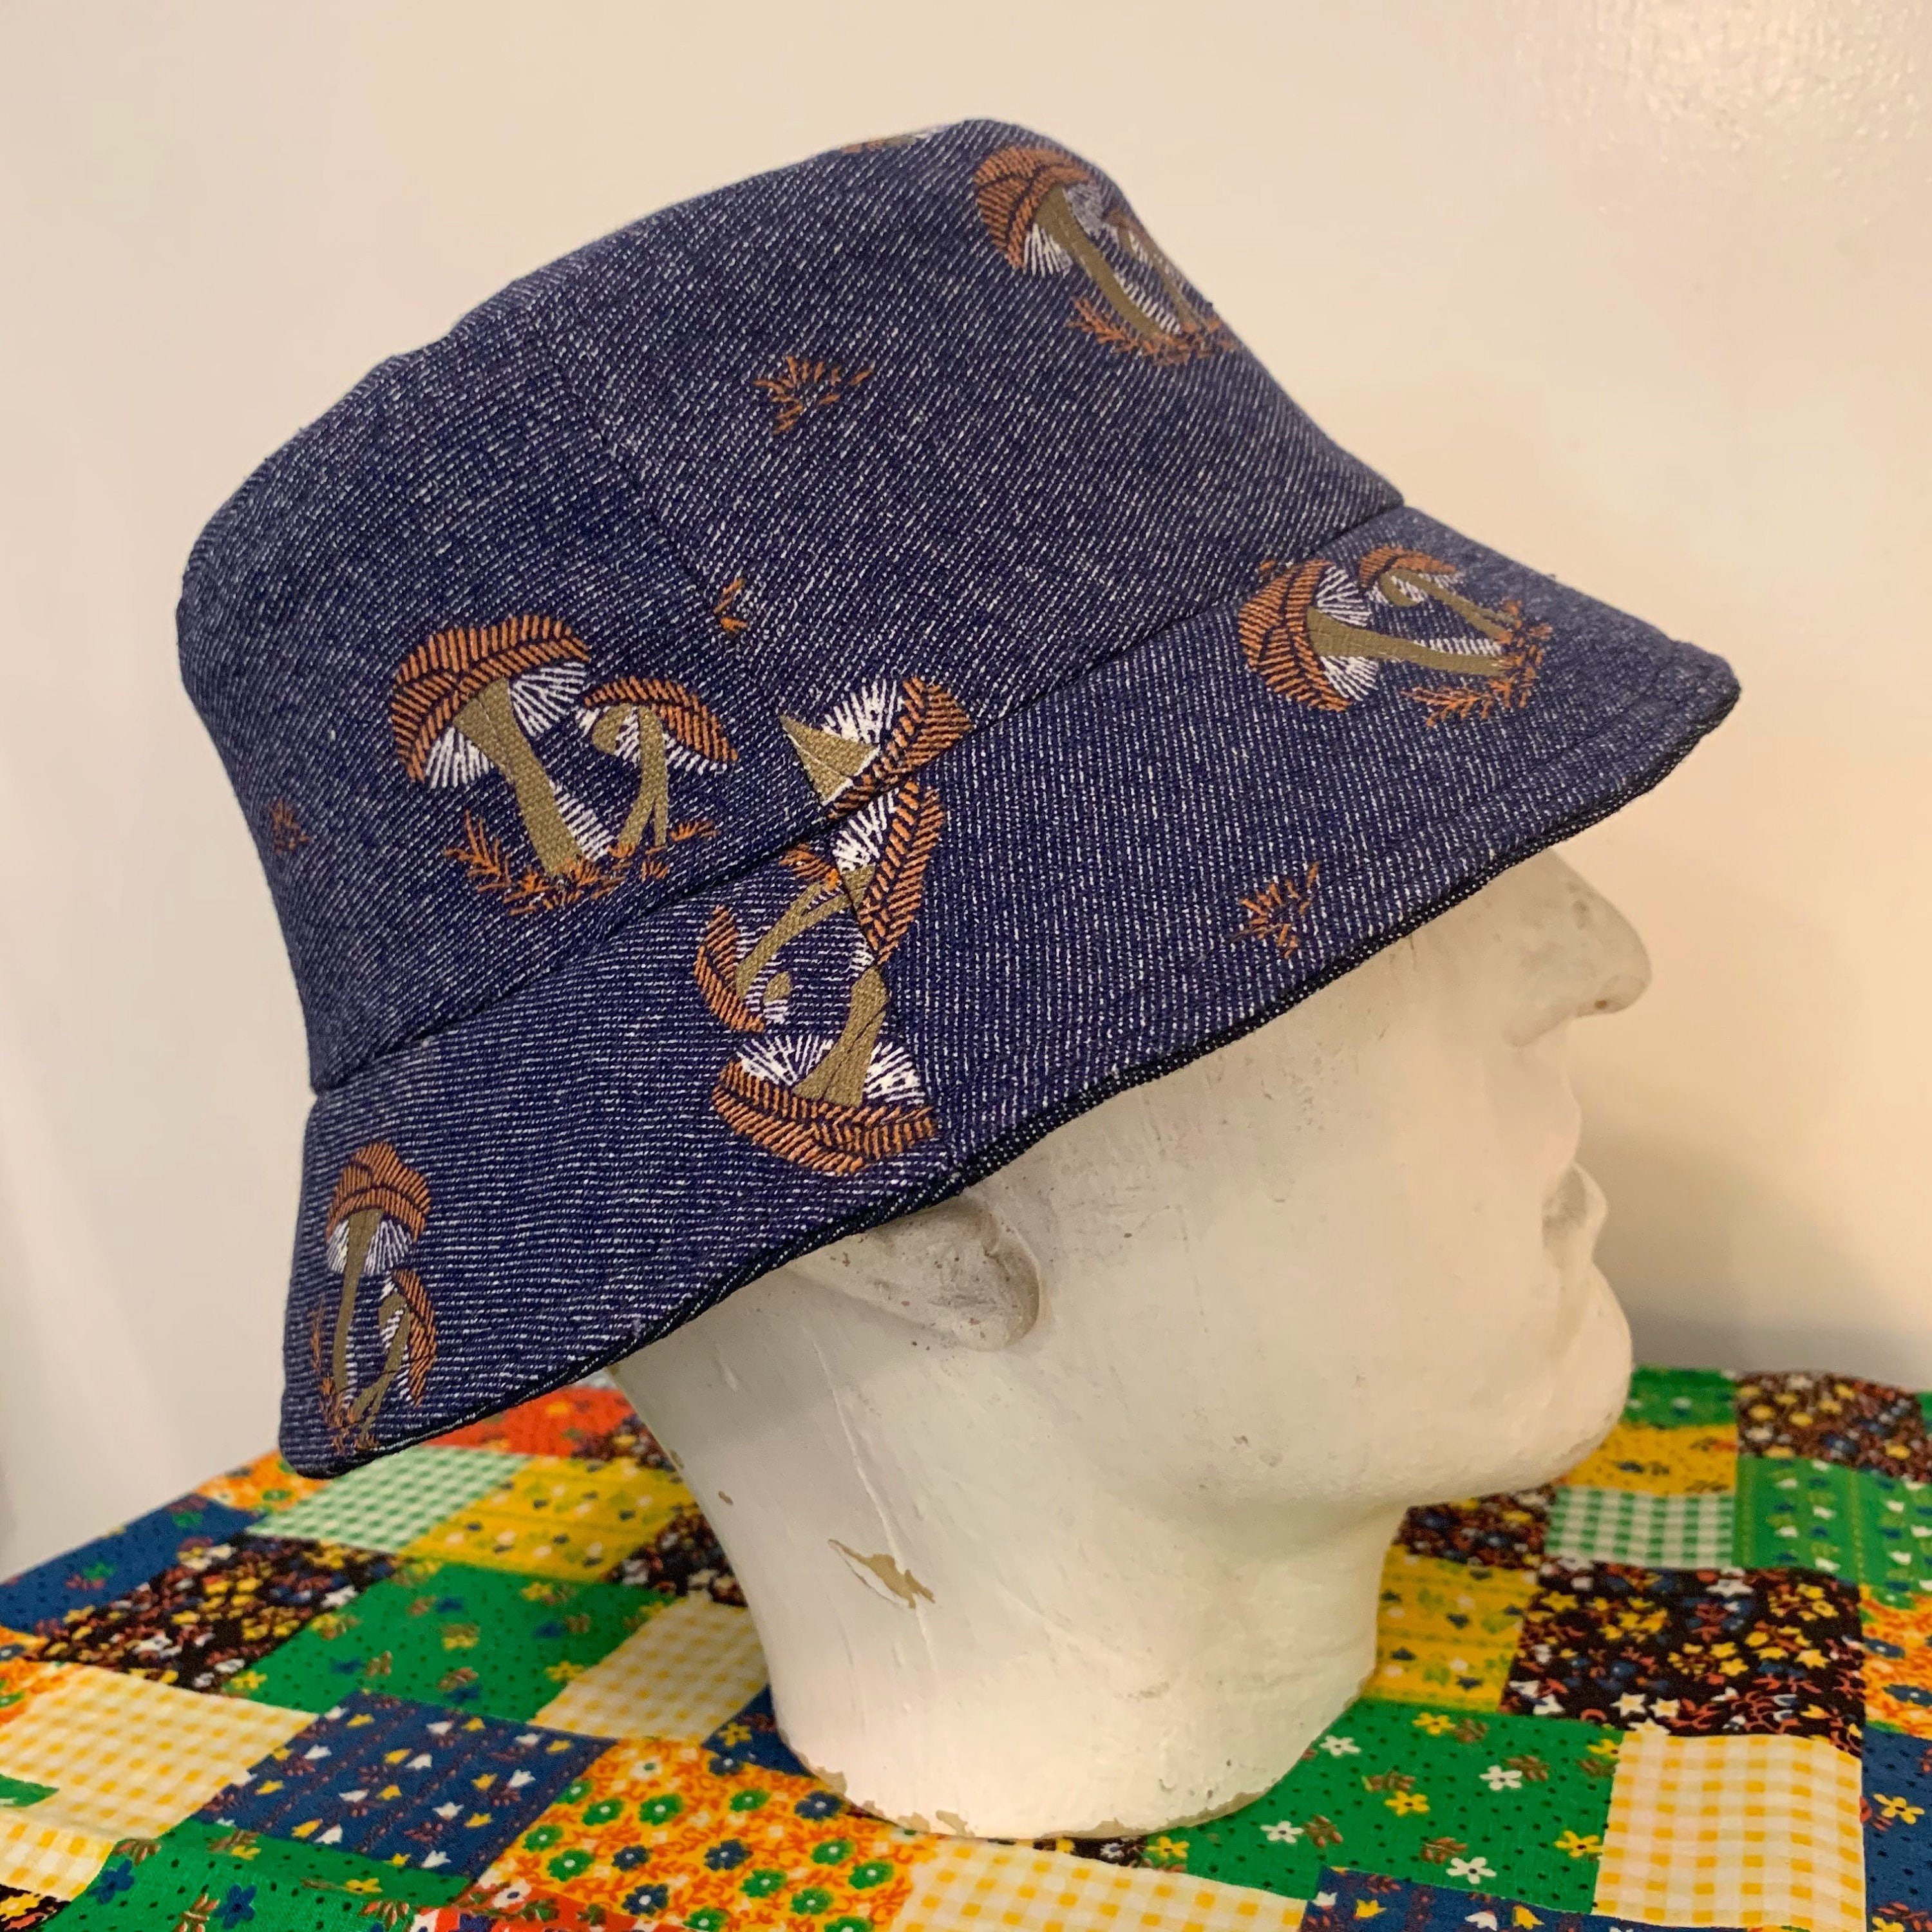 i.Tink Reversible Bucket Hat in Vintage MUshroom Print and Hemp Denim